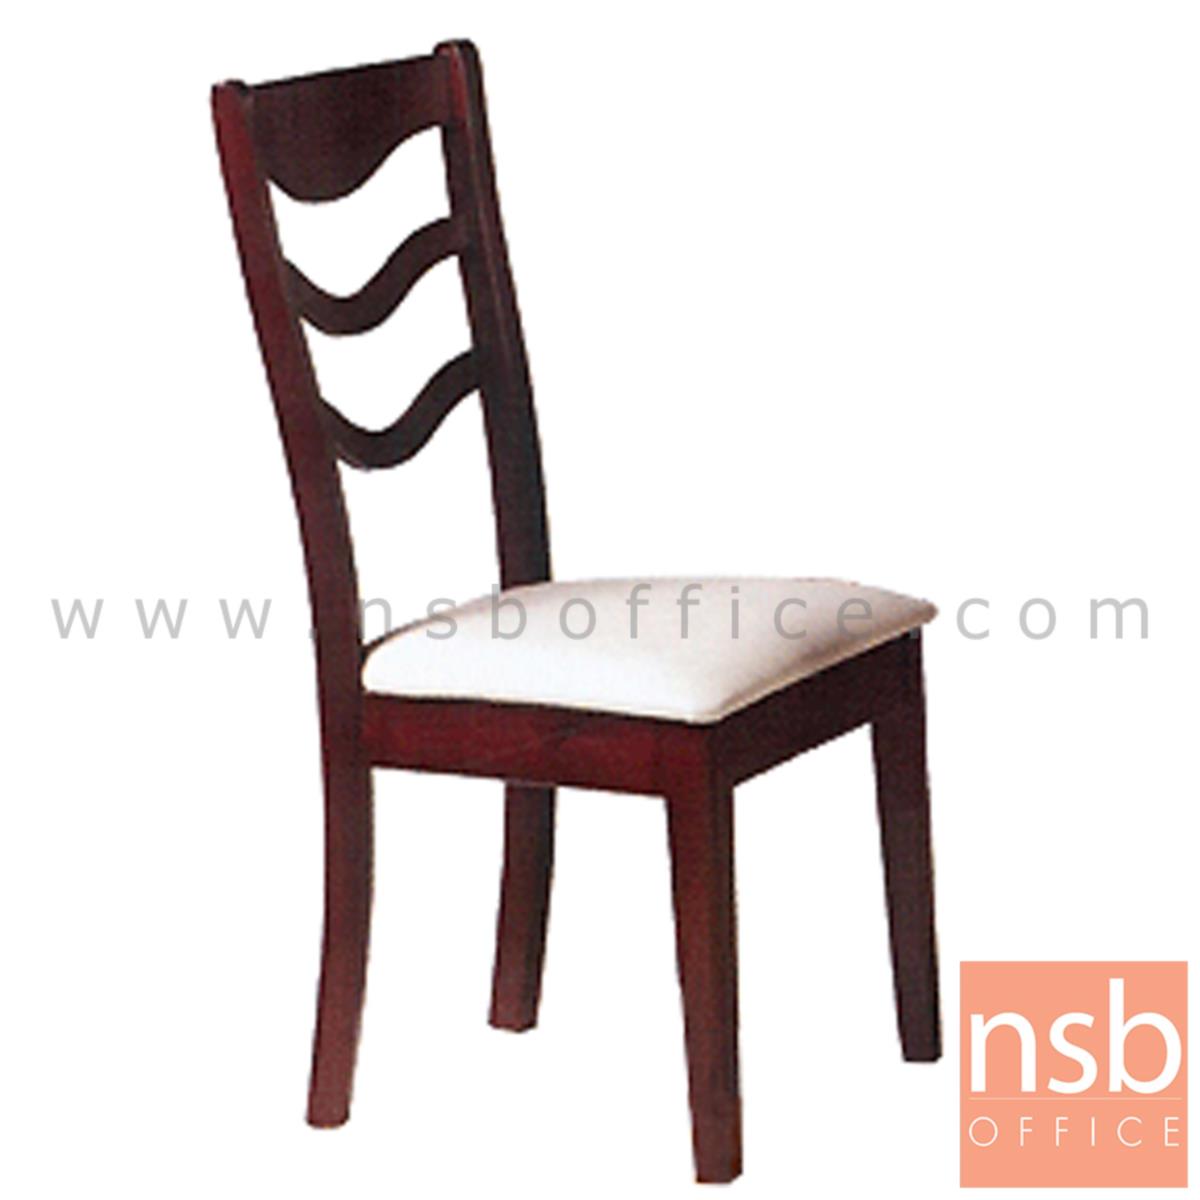 G14A048:เก้าอี้ไม้ยางพาราที่นั่งหุ้มหนังเทียม รุ่น Preston (เพรสตัน) ขาไม้ 